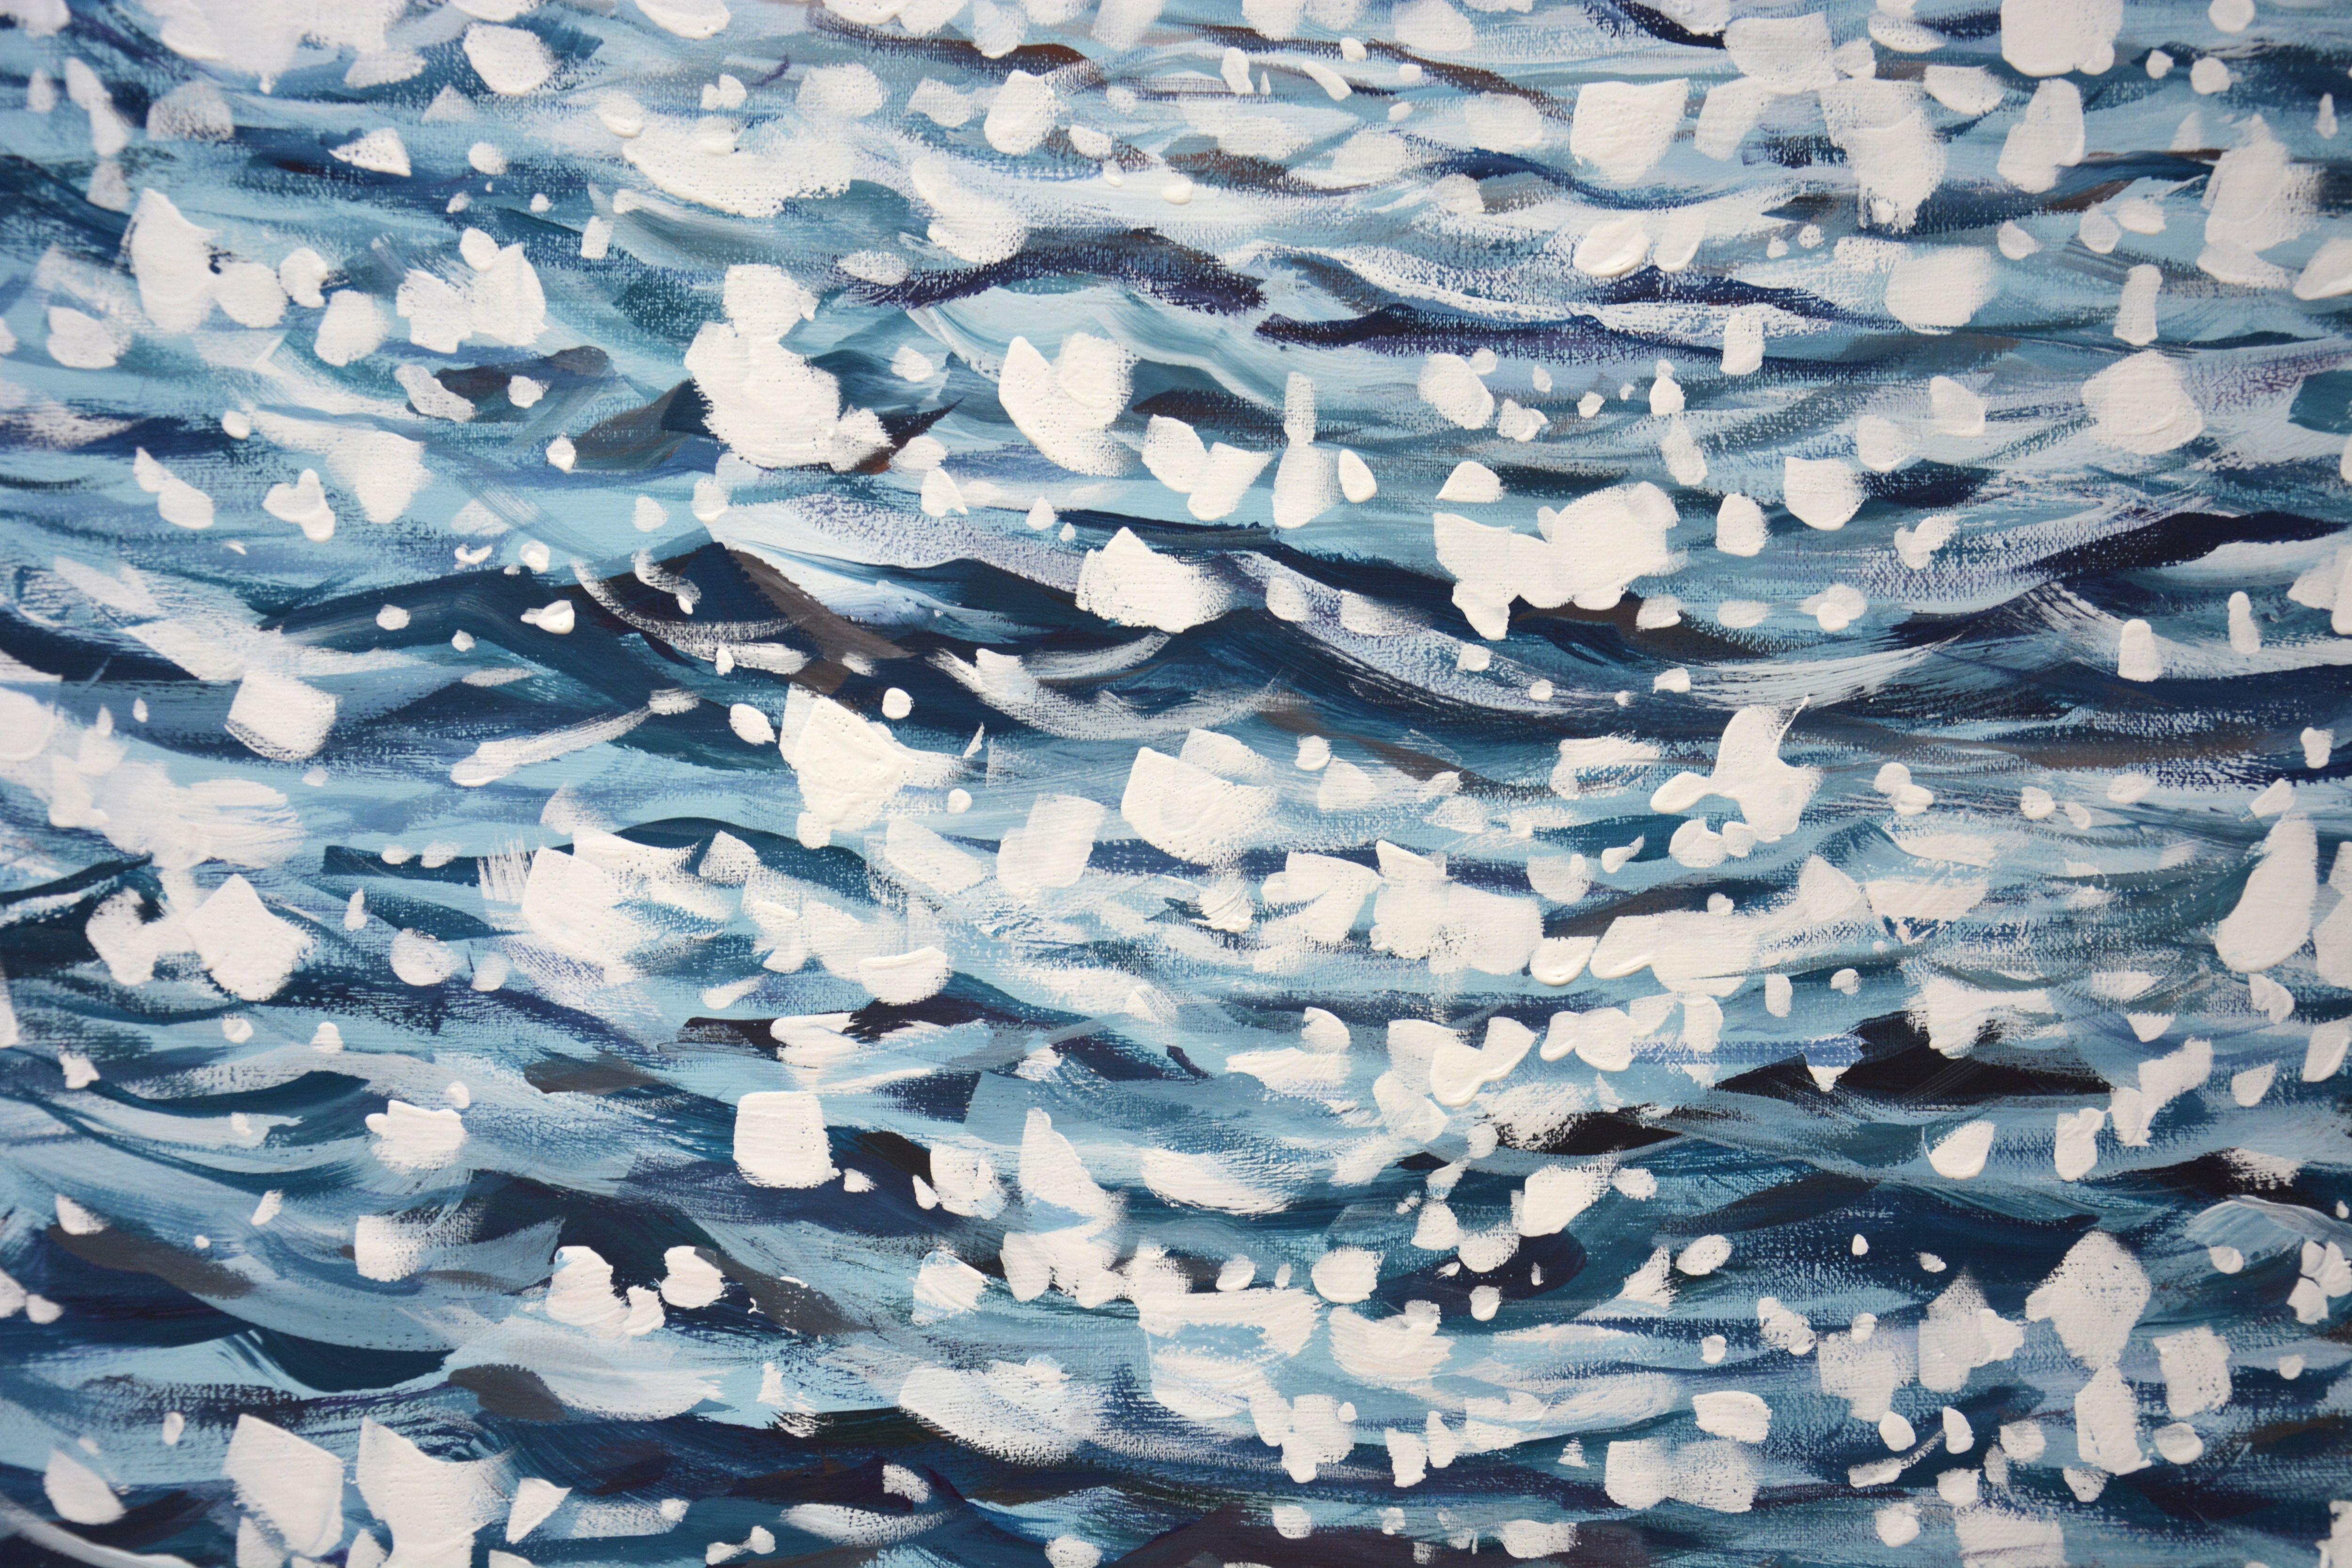 Ocean magic, Painting, Acrylic on Canvas 3